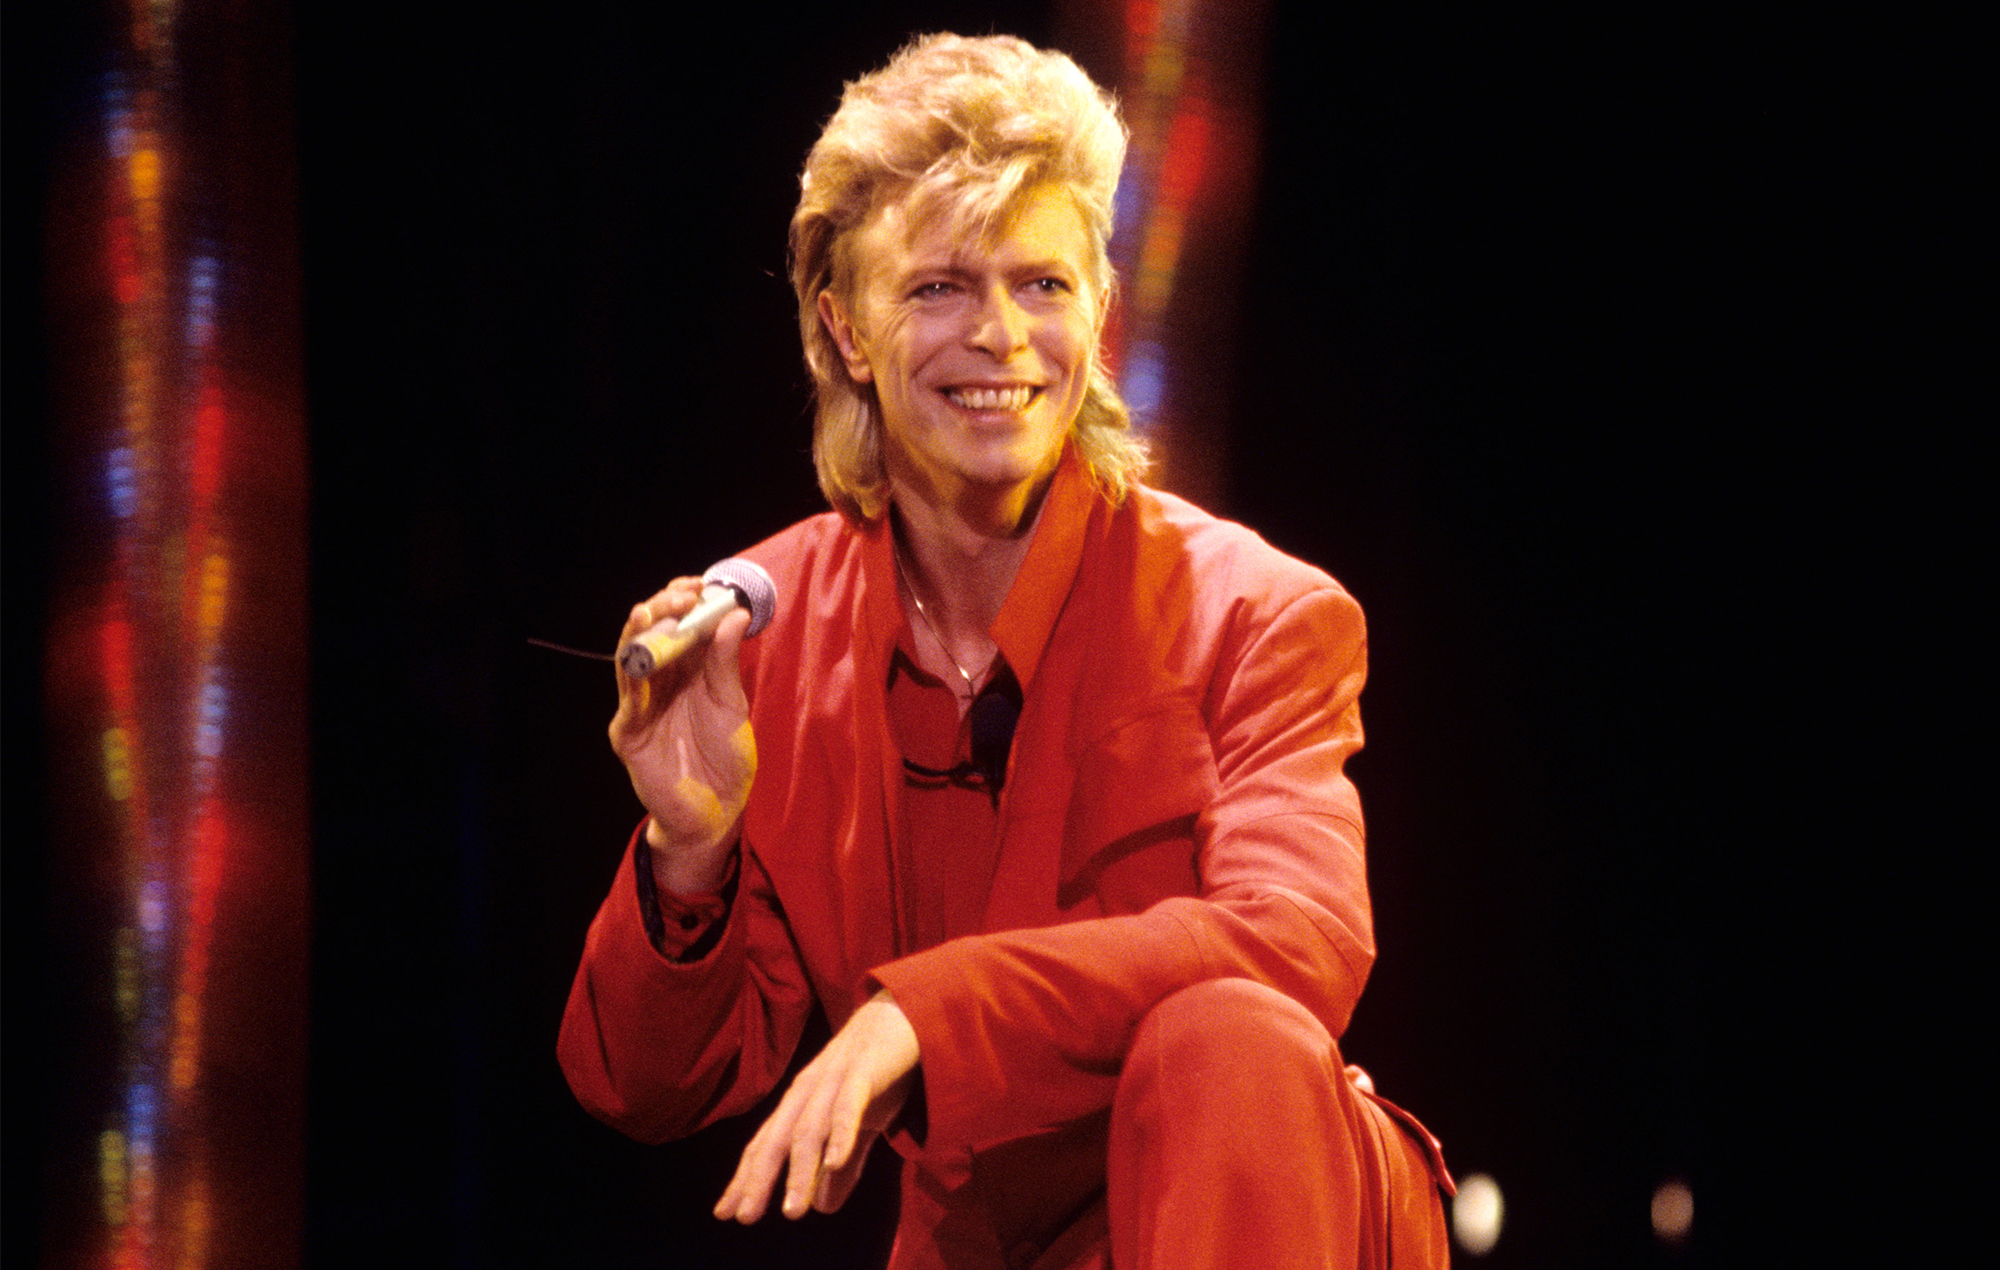 Se publicará una versión inédita de "Let's Dance" de David Bowie